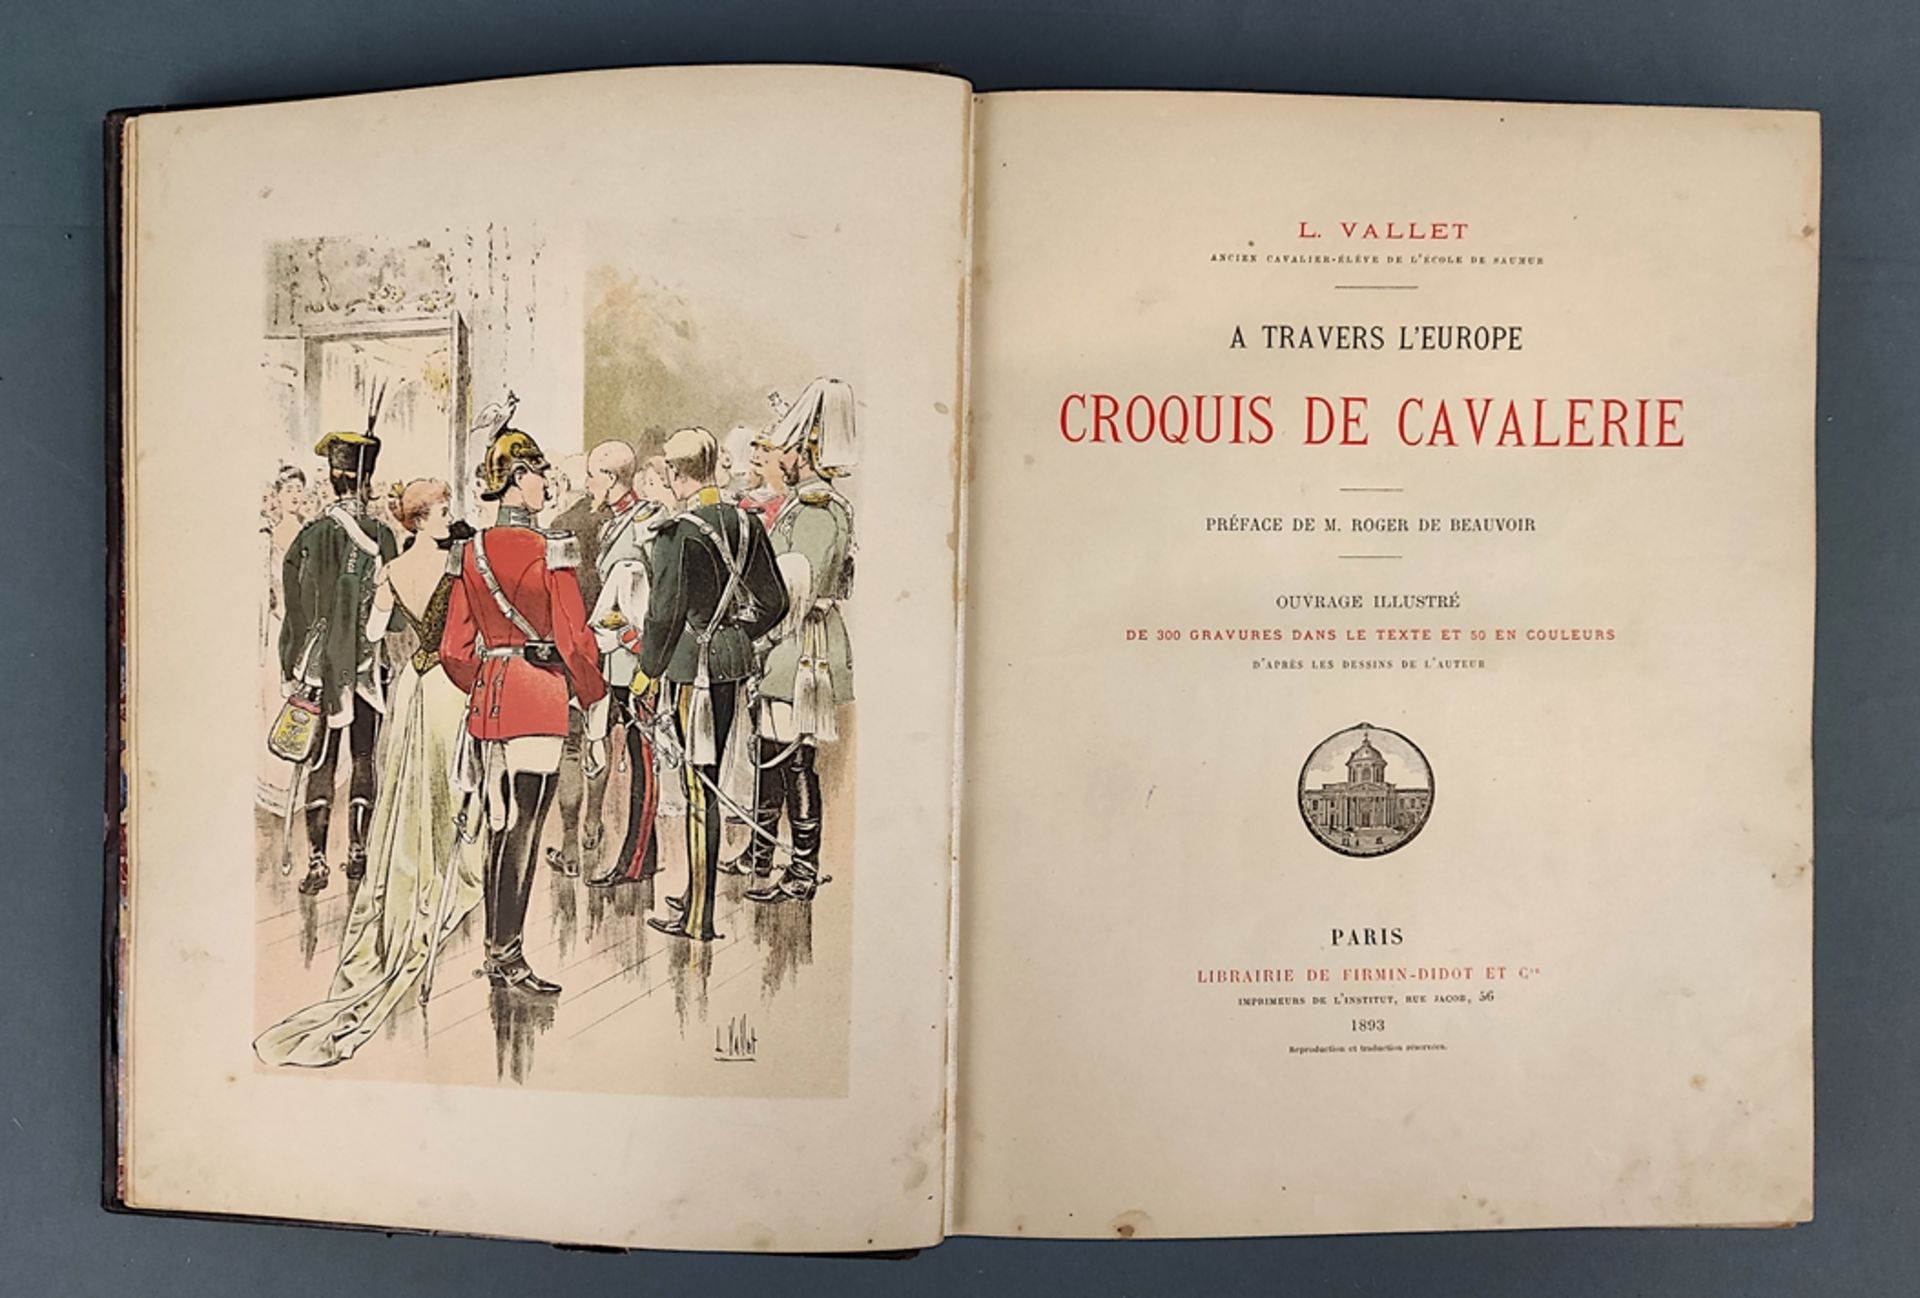 Book, Vallet, L. "A travers l'Europe. Croquis de cavalerie", Paris 1893, Libraire de Firmin-Didot e - Image 5 of 7